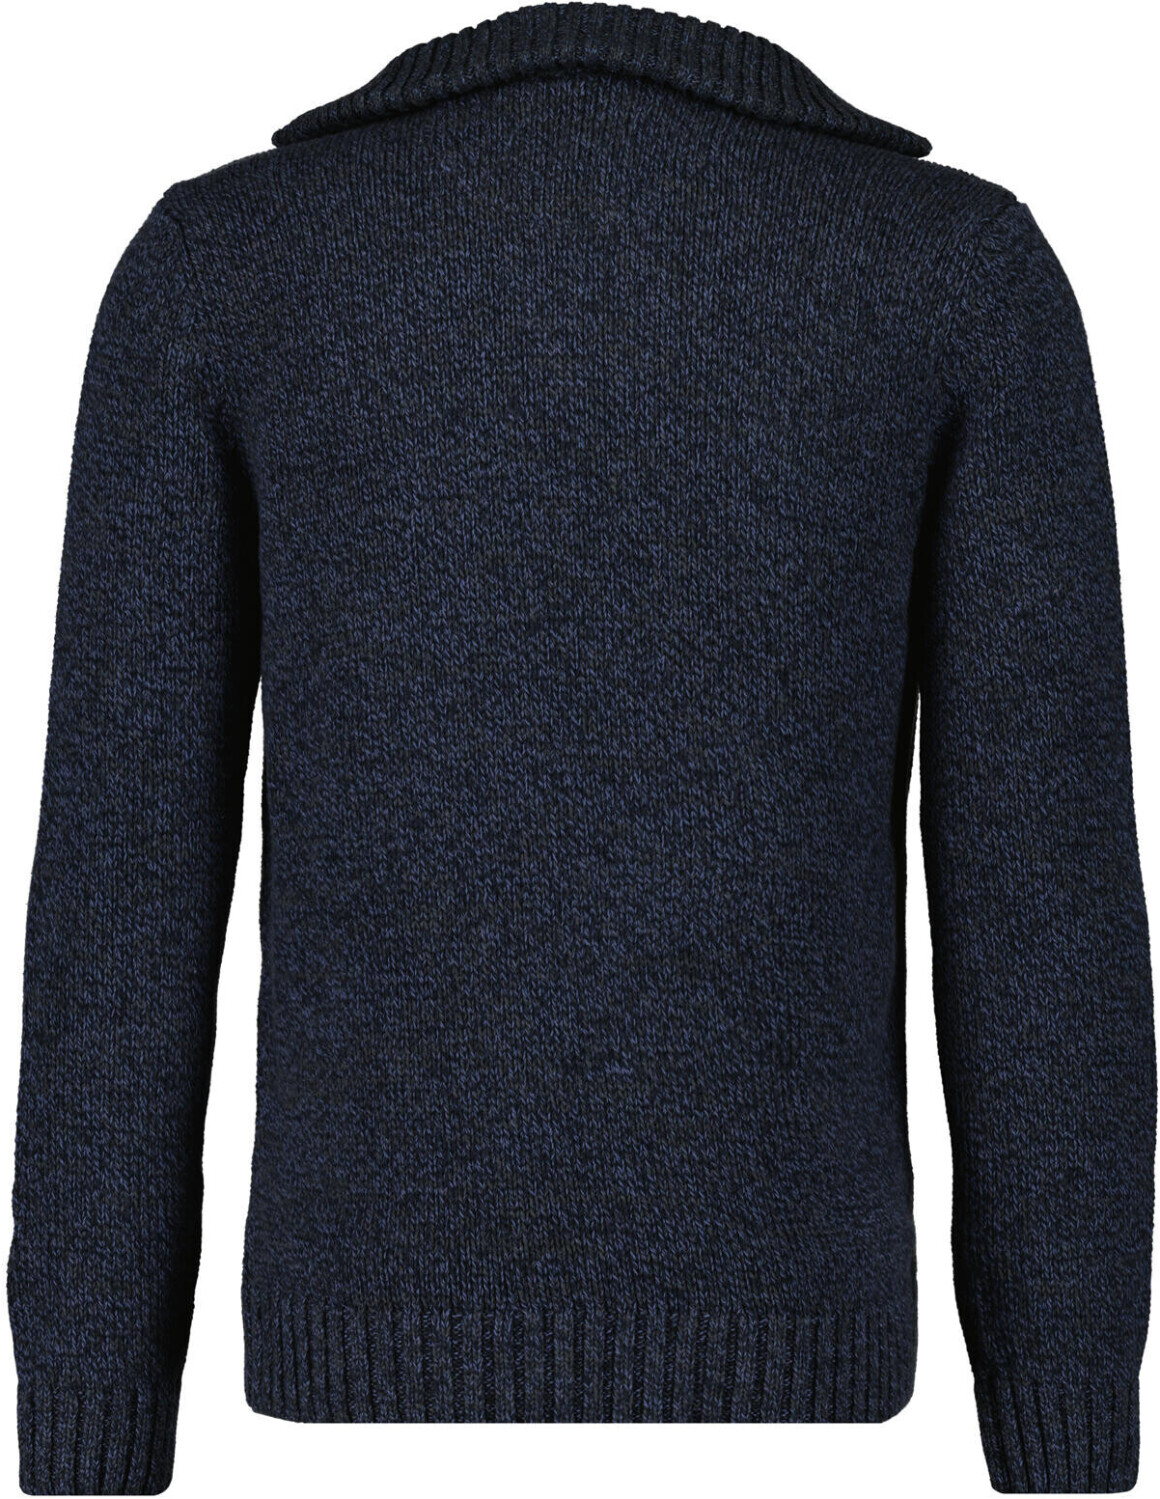 Ragman Tweed-Pullover mit Troyer | (502662-170) Preisvergleich dunkelblau-grau mouliniert ab 69,99 bei €